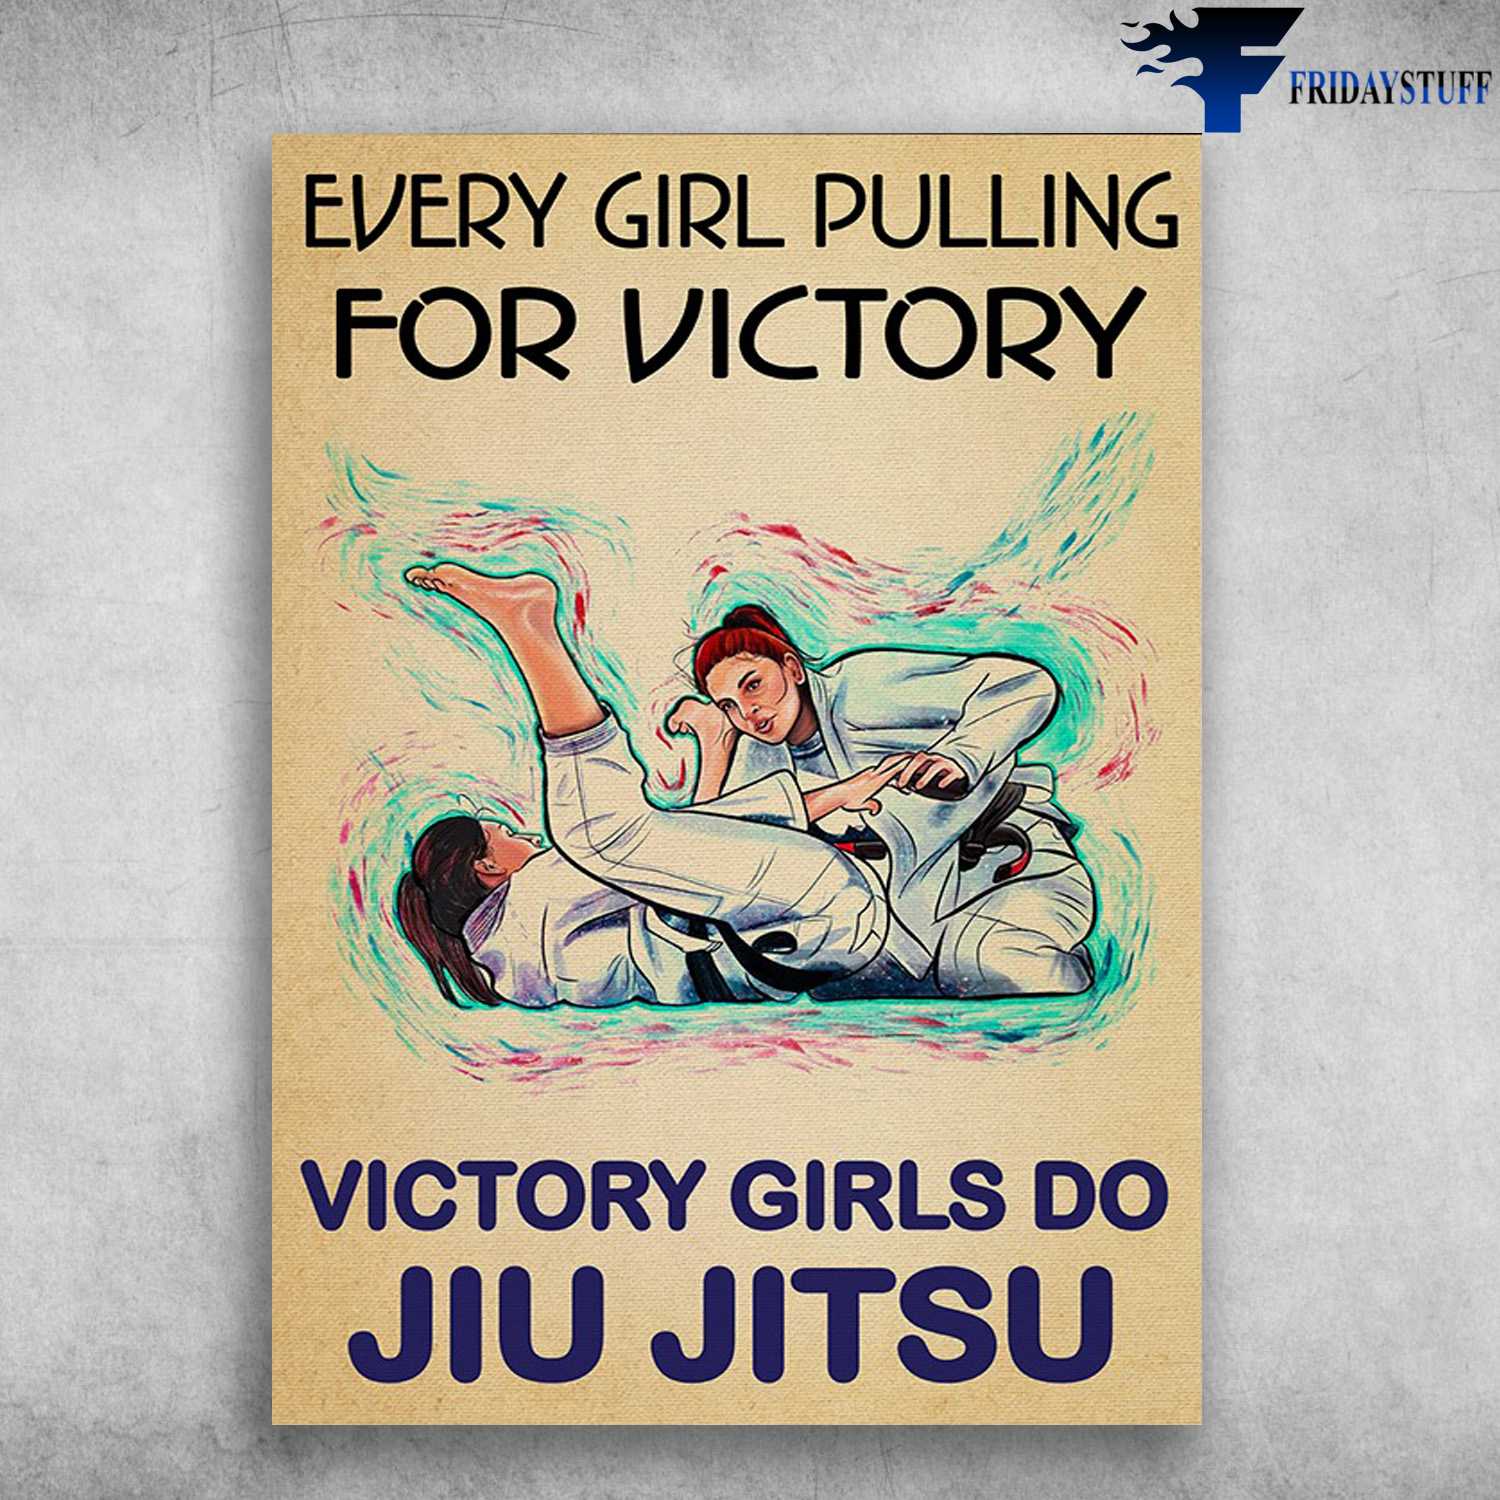 Jiu Jitsu - Every Girl Pilling For Victory, Victory Girls Do Jiu Jitsu